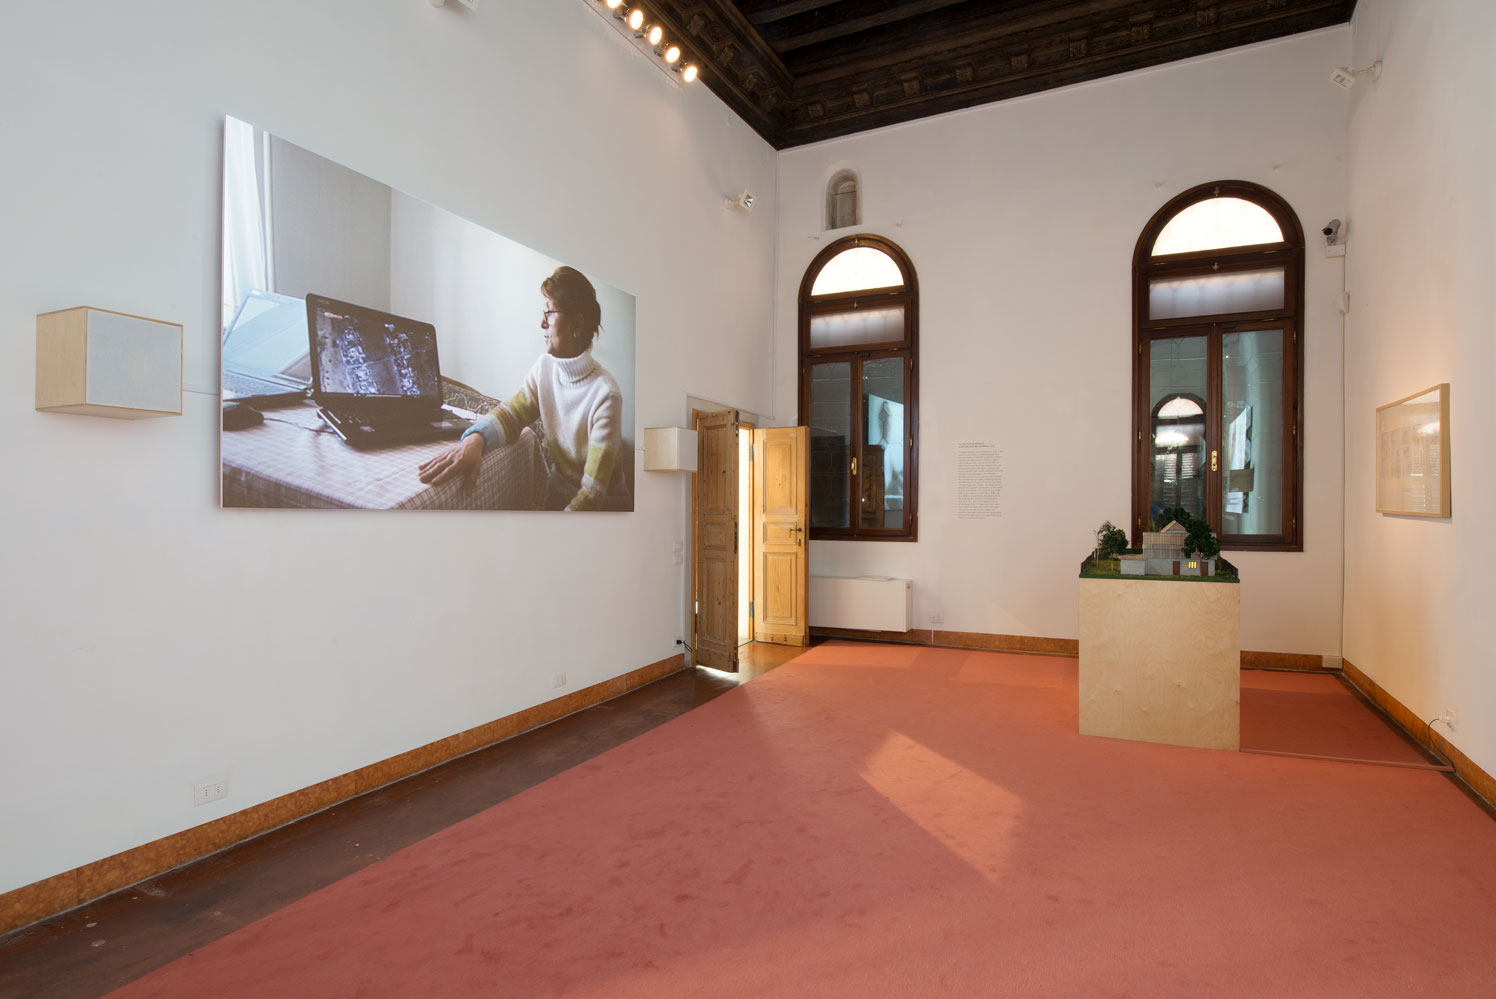 Realizacja The Open Group, wystawa „Dispossession”, Biennale w Wenecji, 2015 (źródło: materiały prasowe organizatora)